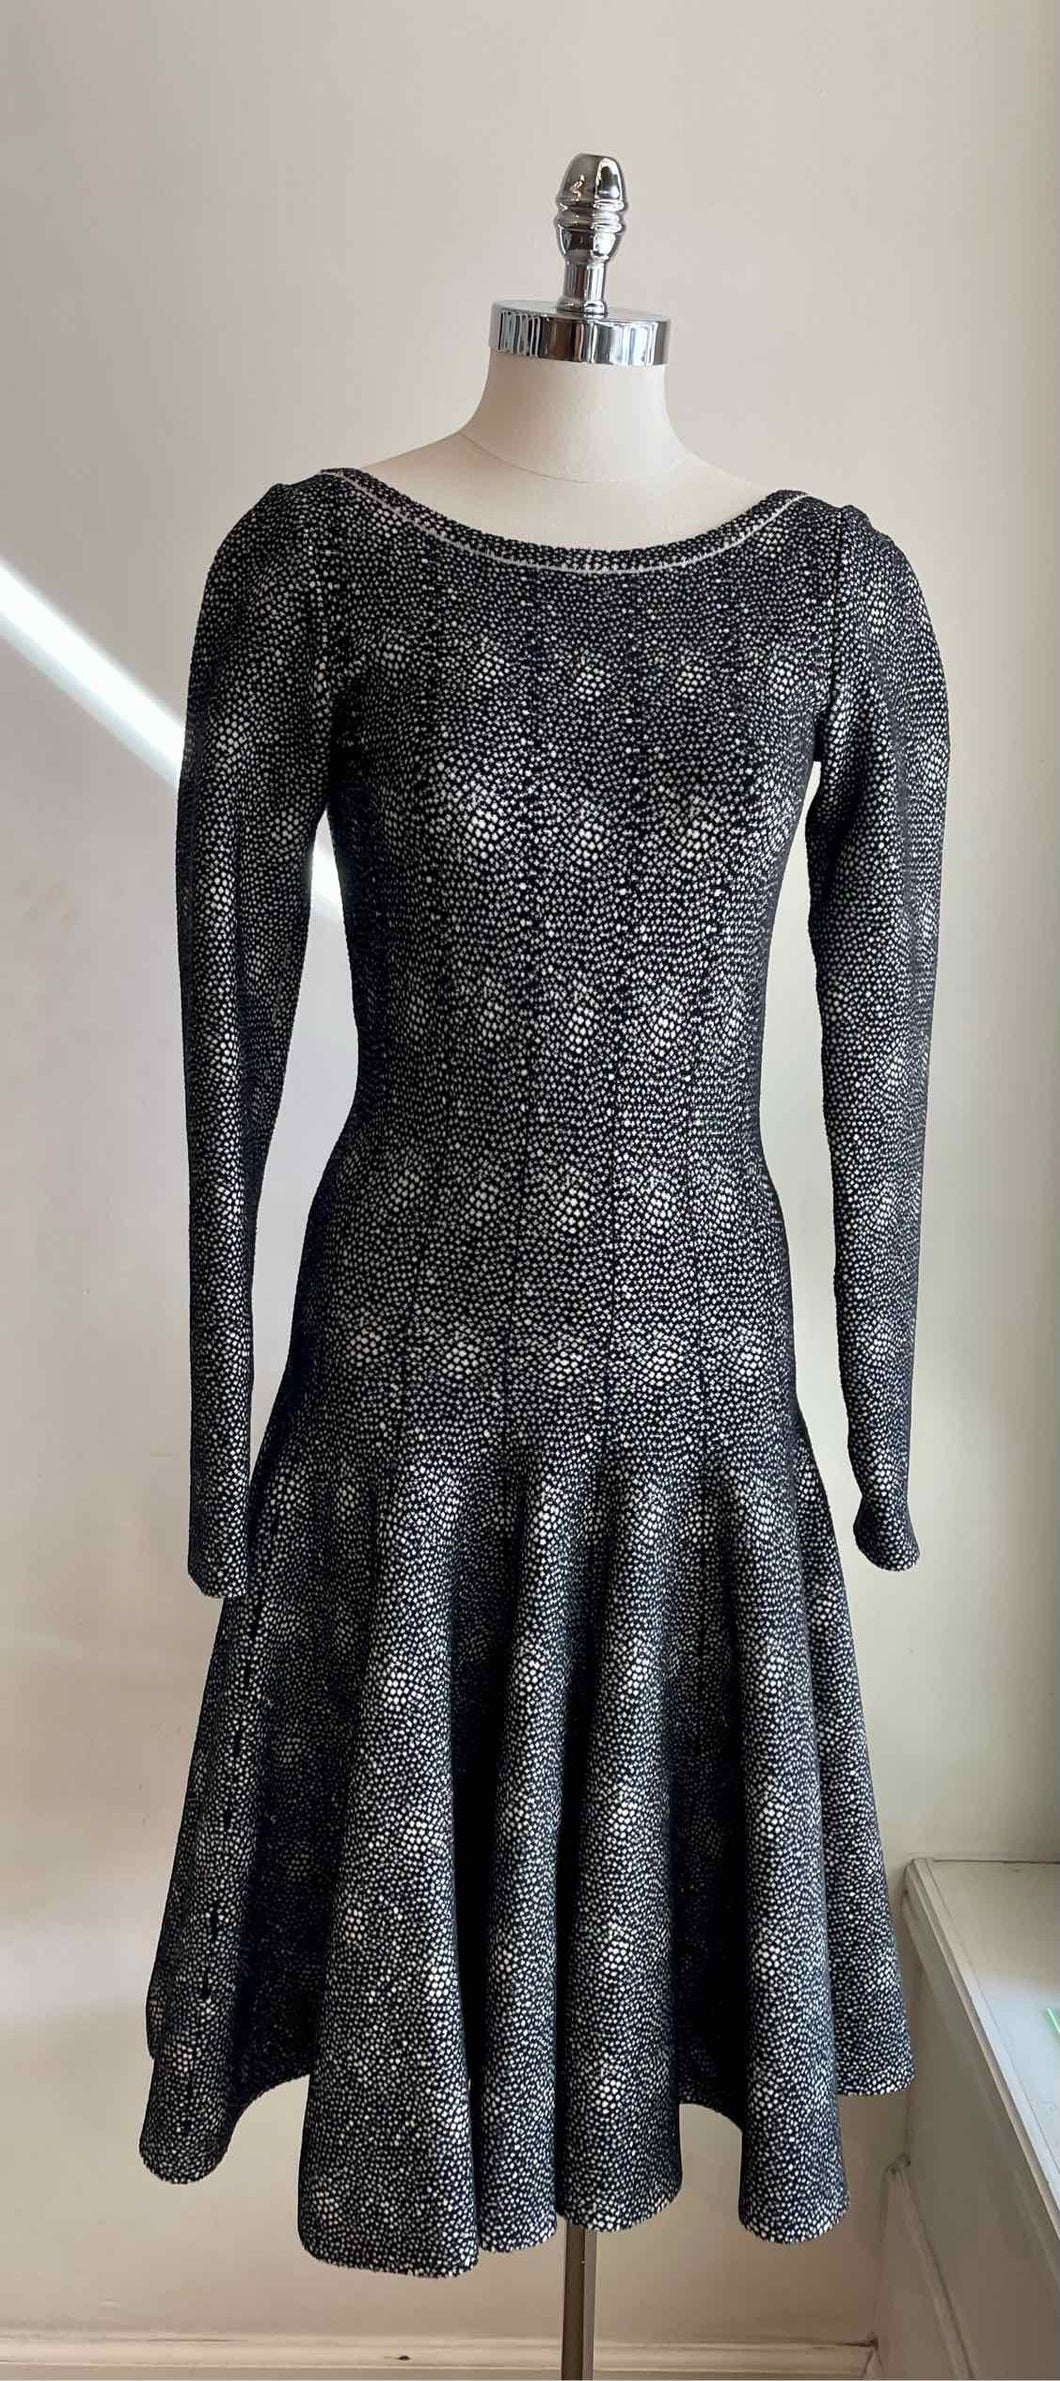 ALAIA Size 4 Black & White Wool Blend Dots Dress